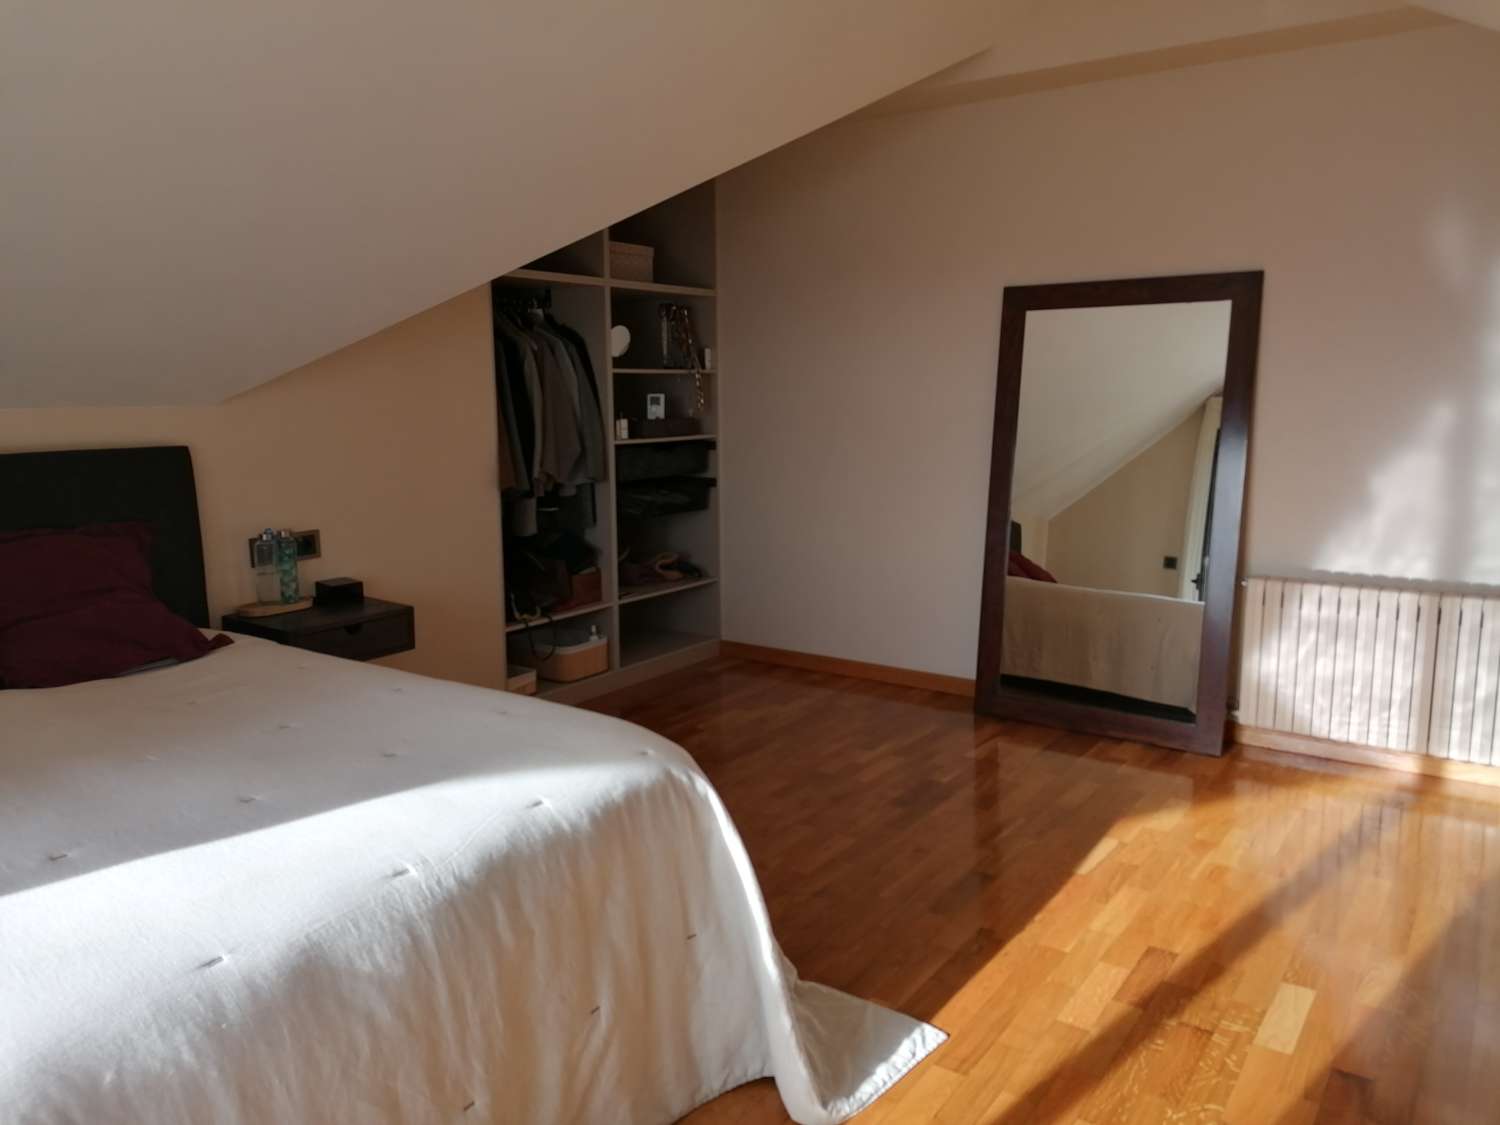 A Coruña : A7139 : Cabanas : Villa minimaliste avec une vue incroyable sur la Ria de Ares...